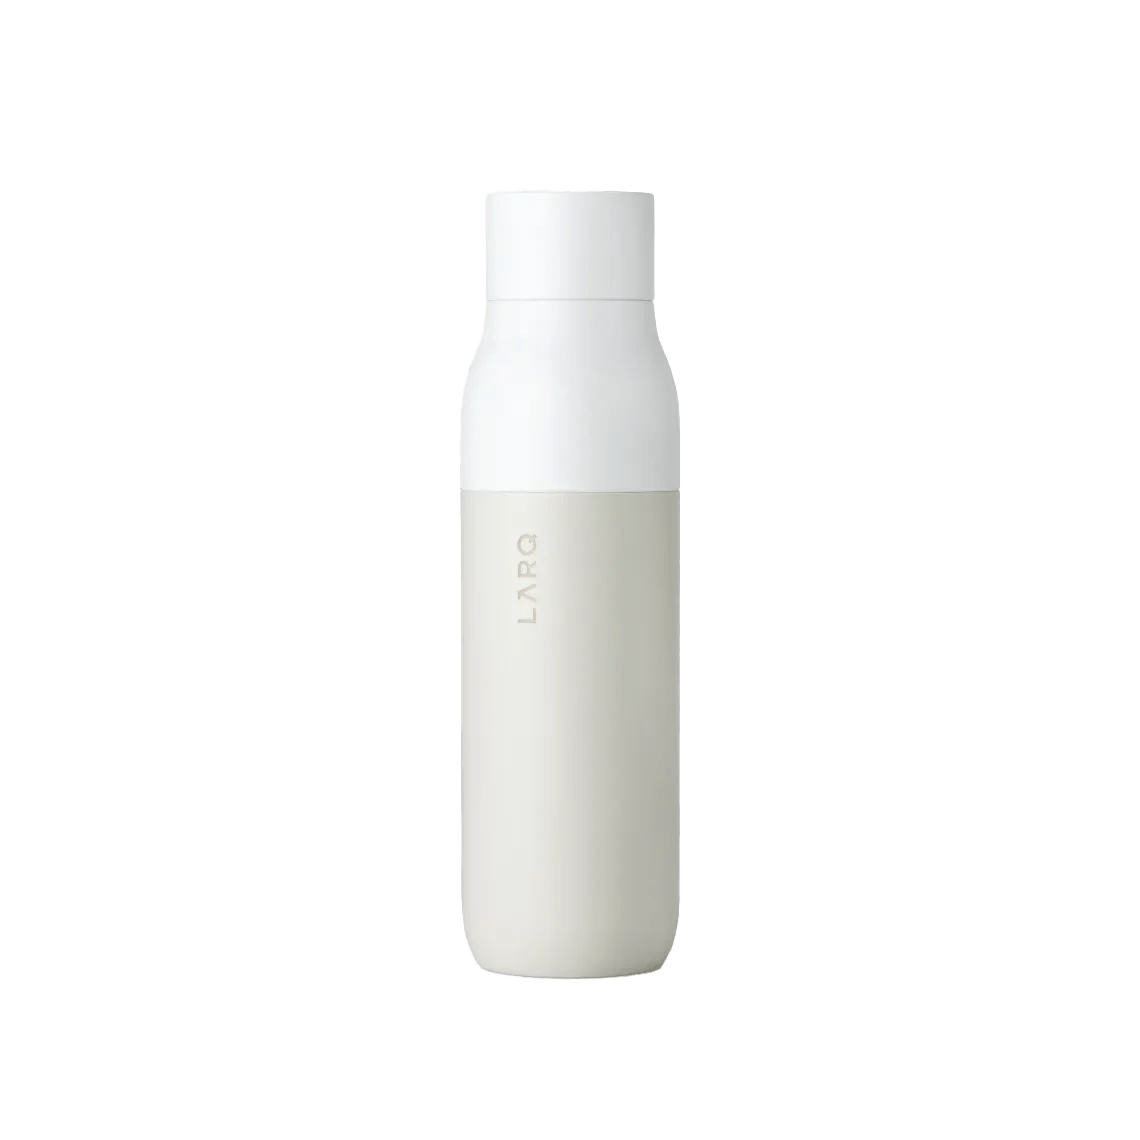 LARQ Bottle Movement PureVis™, 24-Oz.